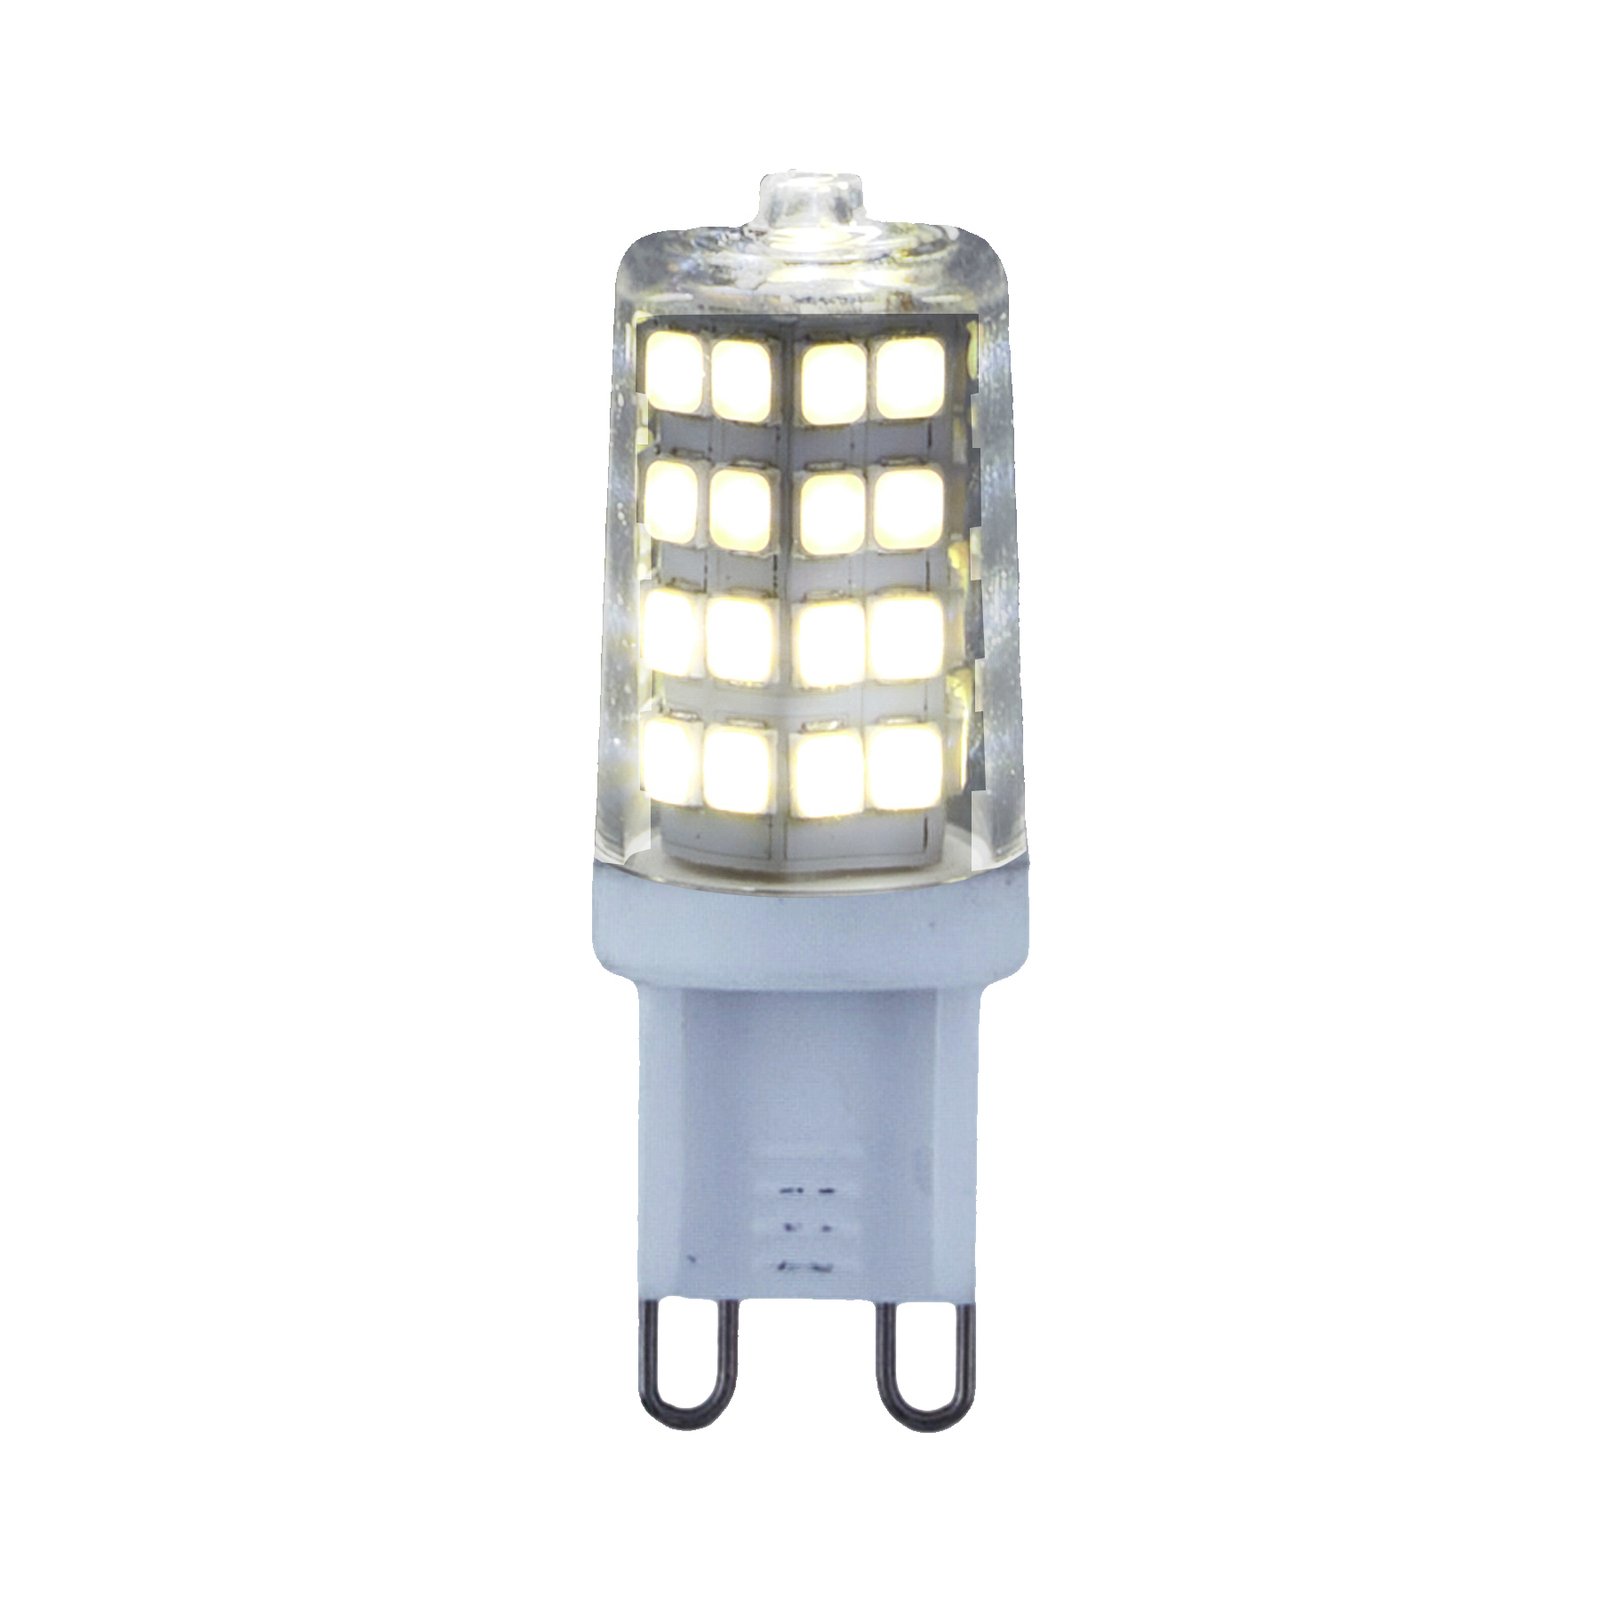 Lindby LED-pliiatsilamp, G9, 3 W, selge, 4000 K, 350 lm